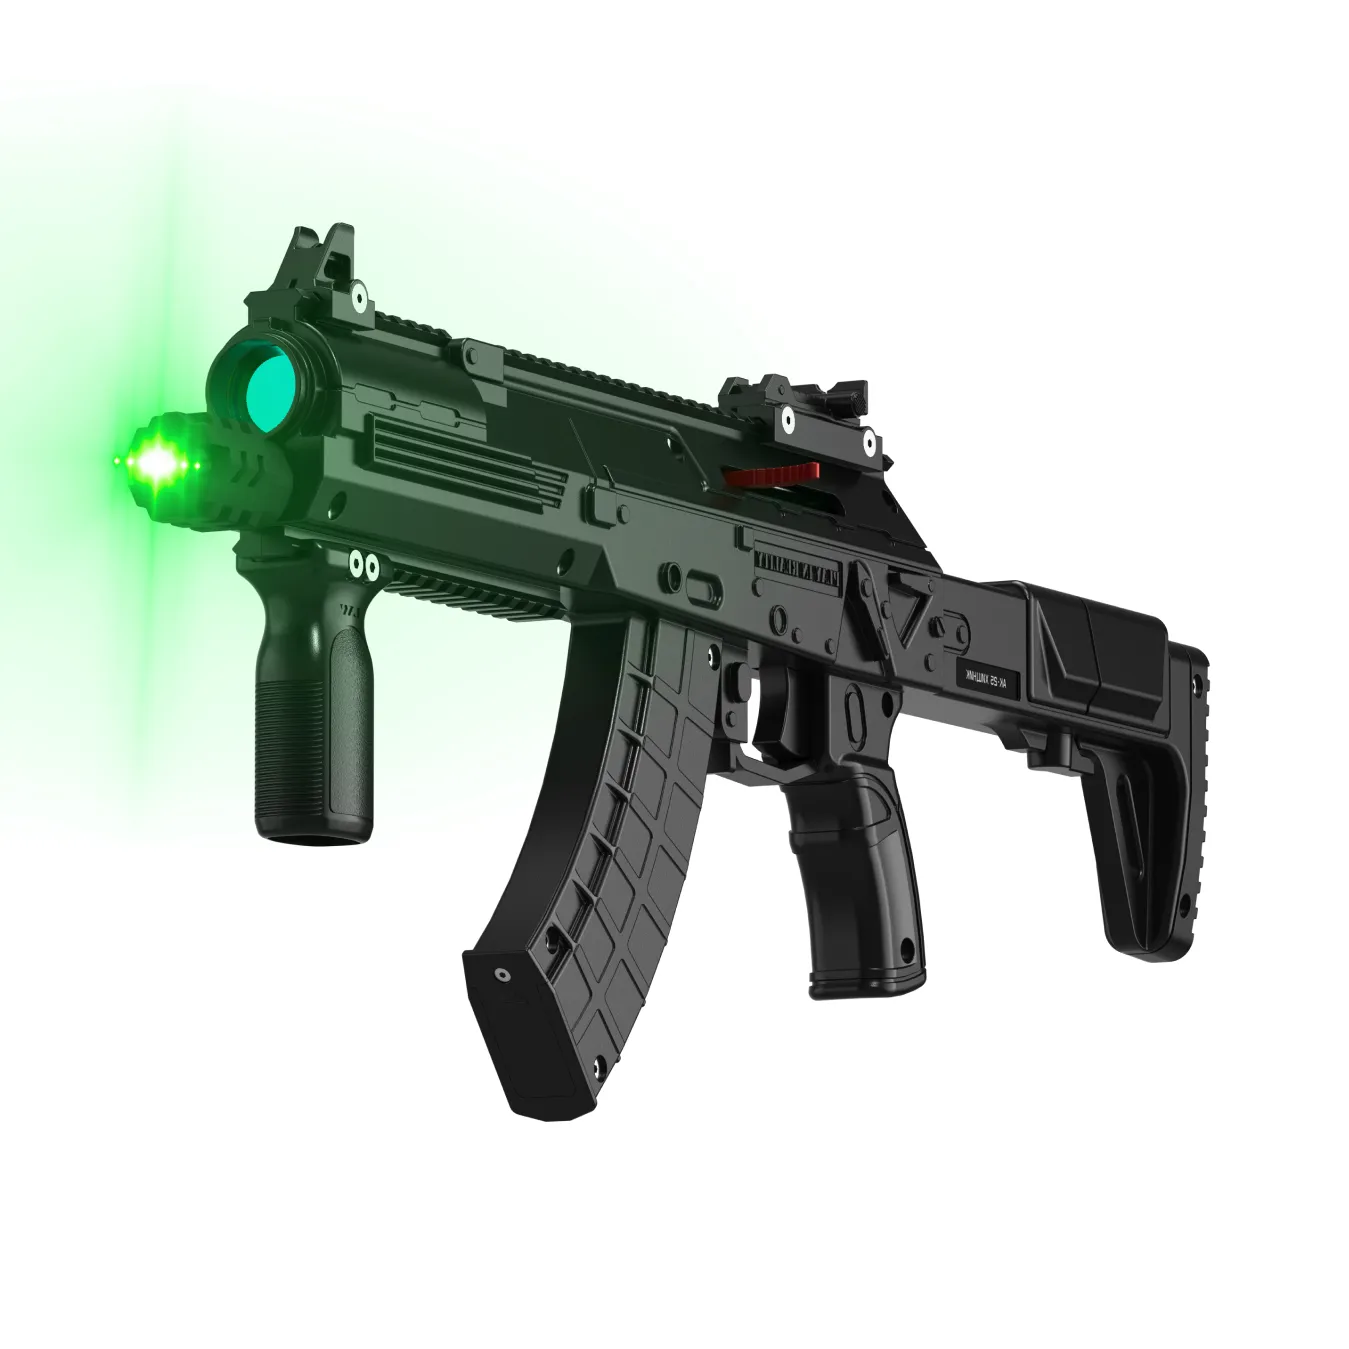 Pistola de etiqueta láser Predator serie especial etiqueta láser al aire libre para niños y adultos pistola de etiqueta láser profesional